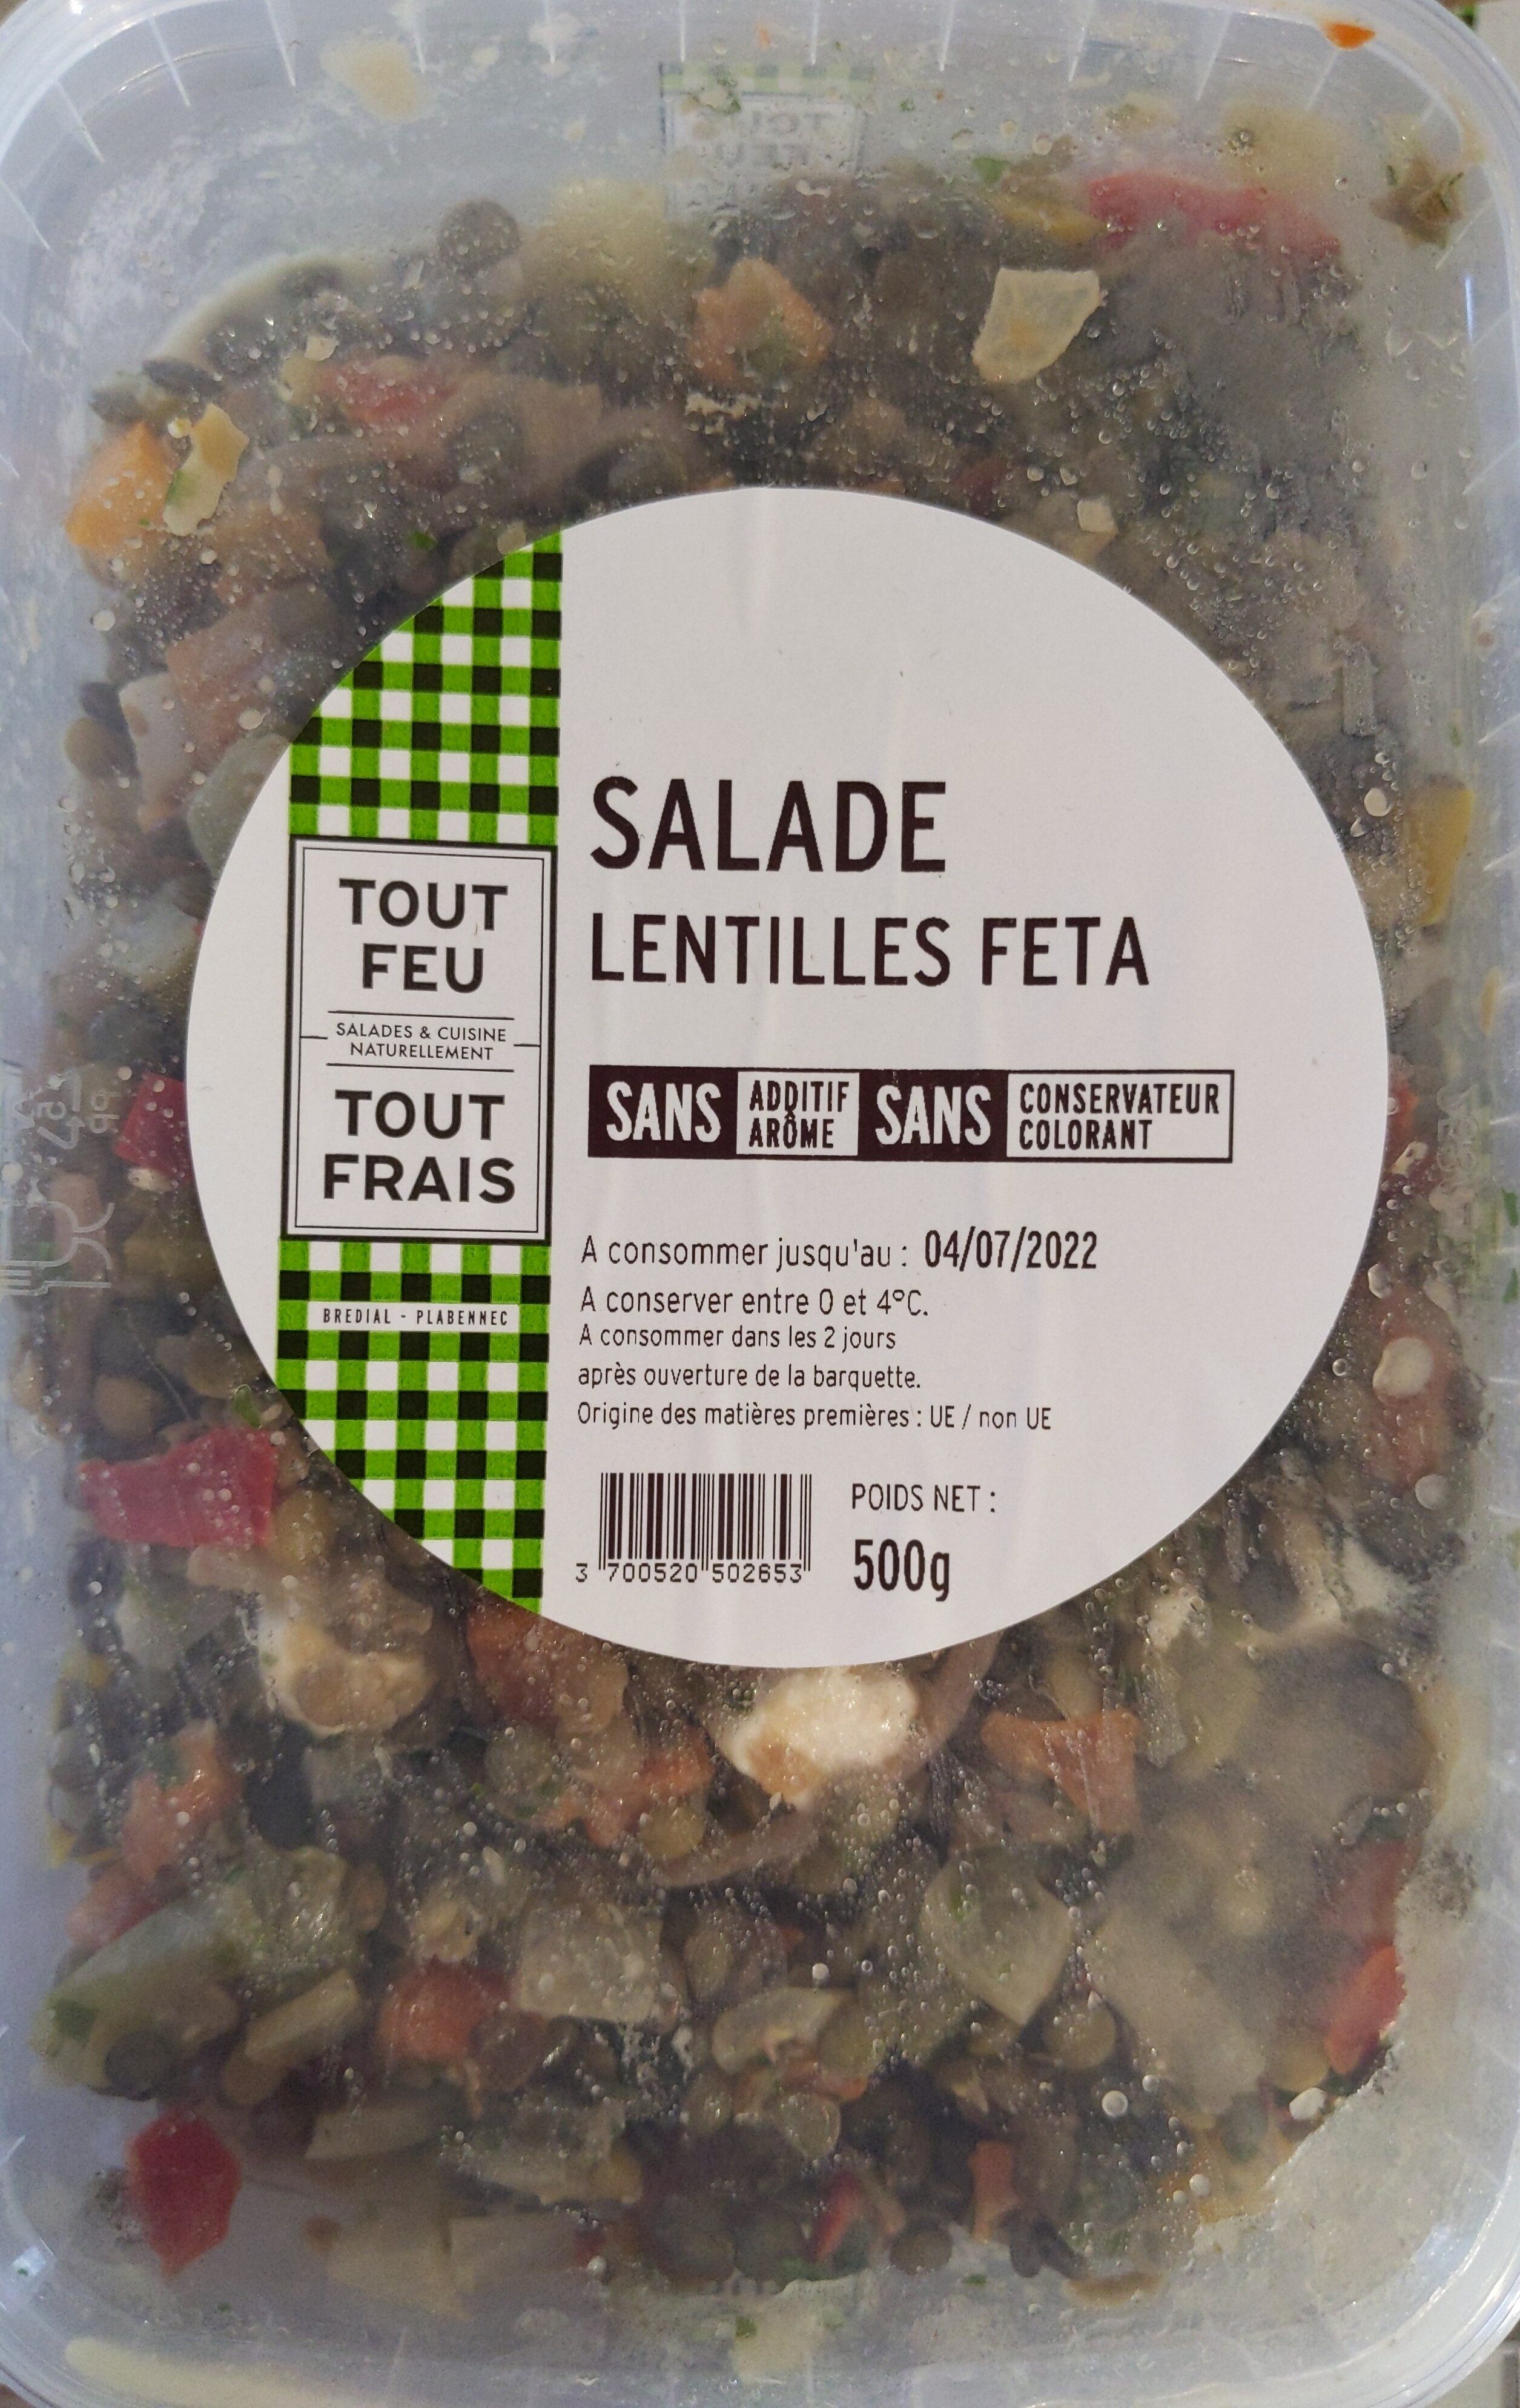 Salade lentilles feta - Product - fr